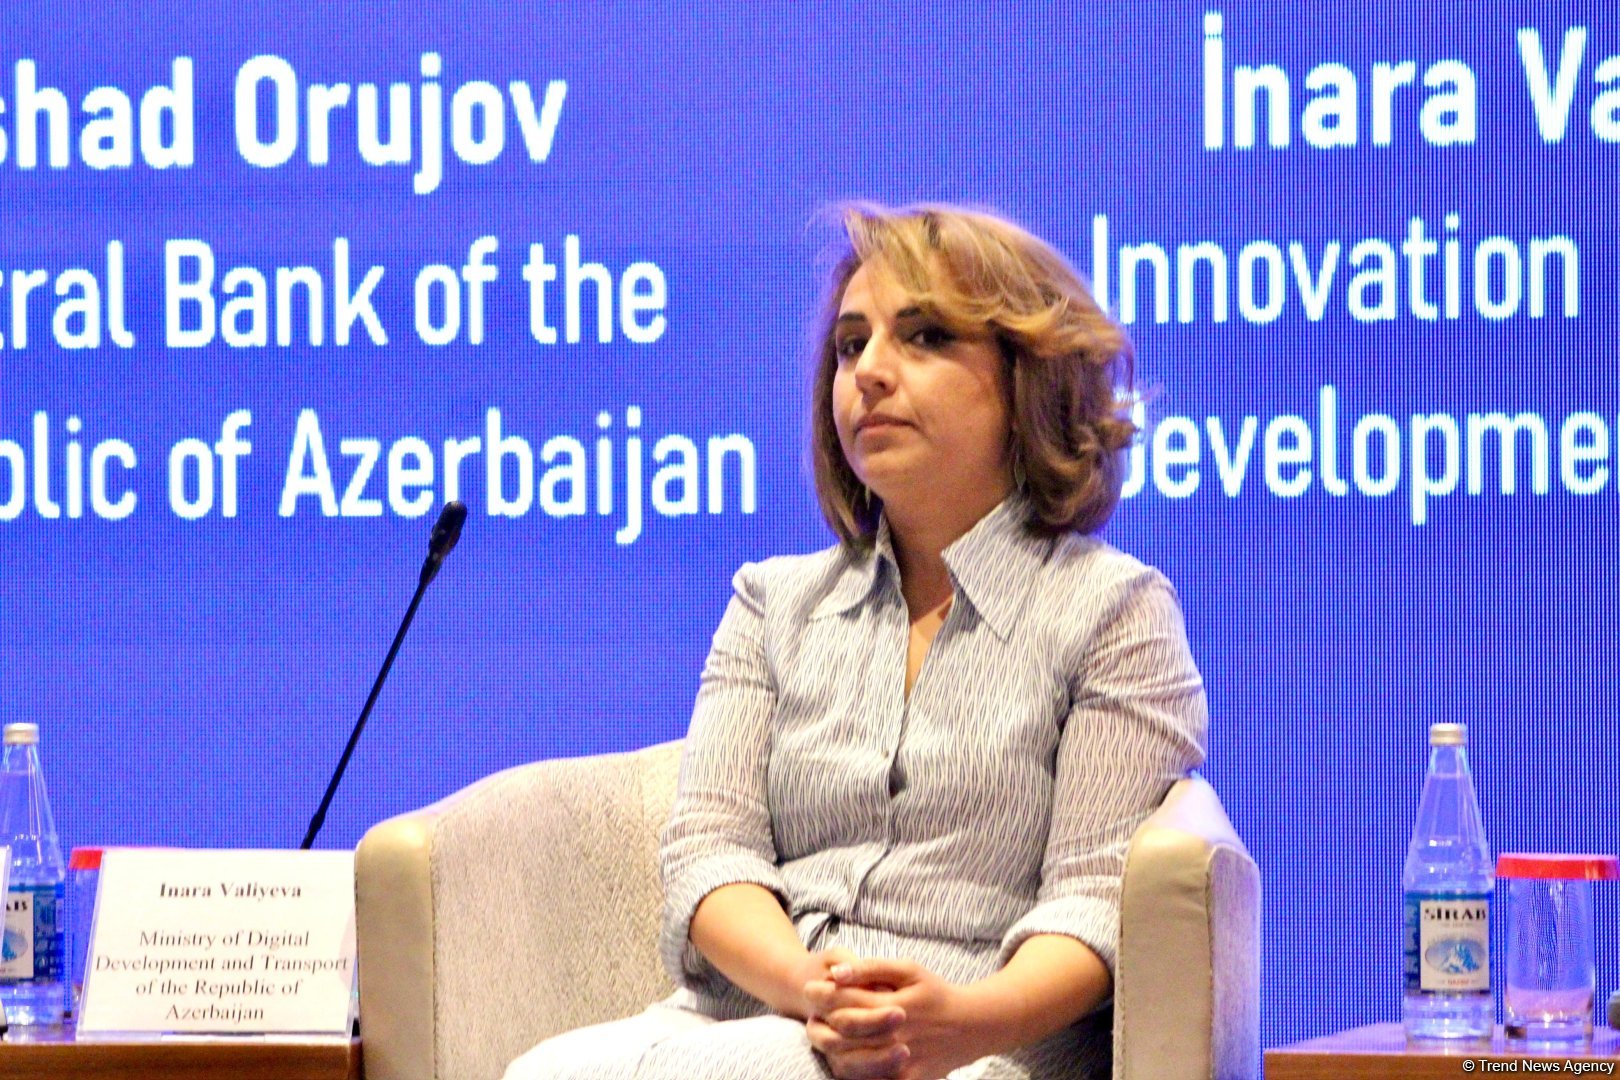 В Азербайджане стартапам оказывается поддержка для выхода на международные рынки - председатель агентства